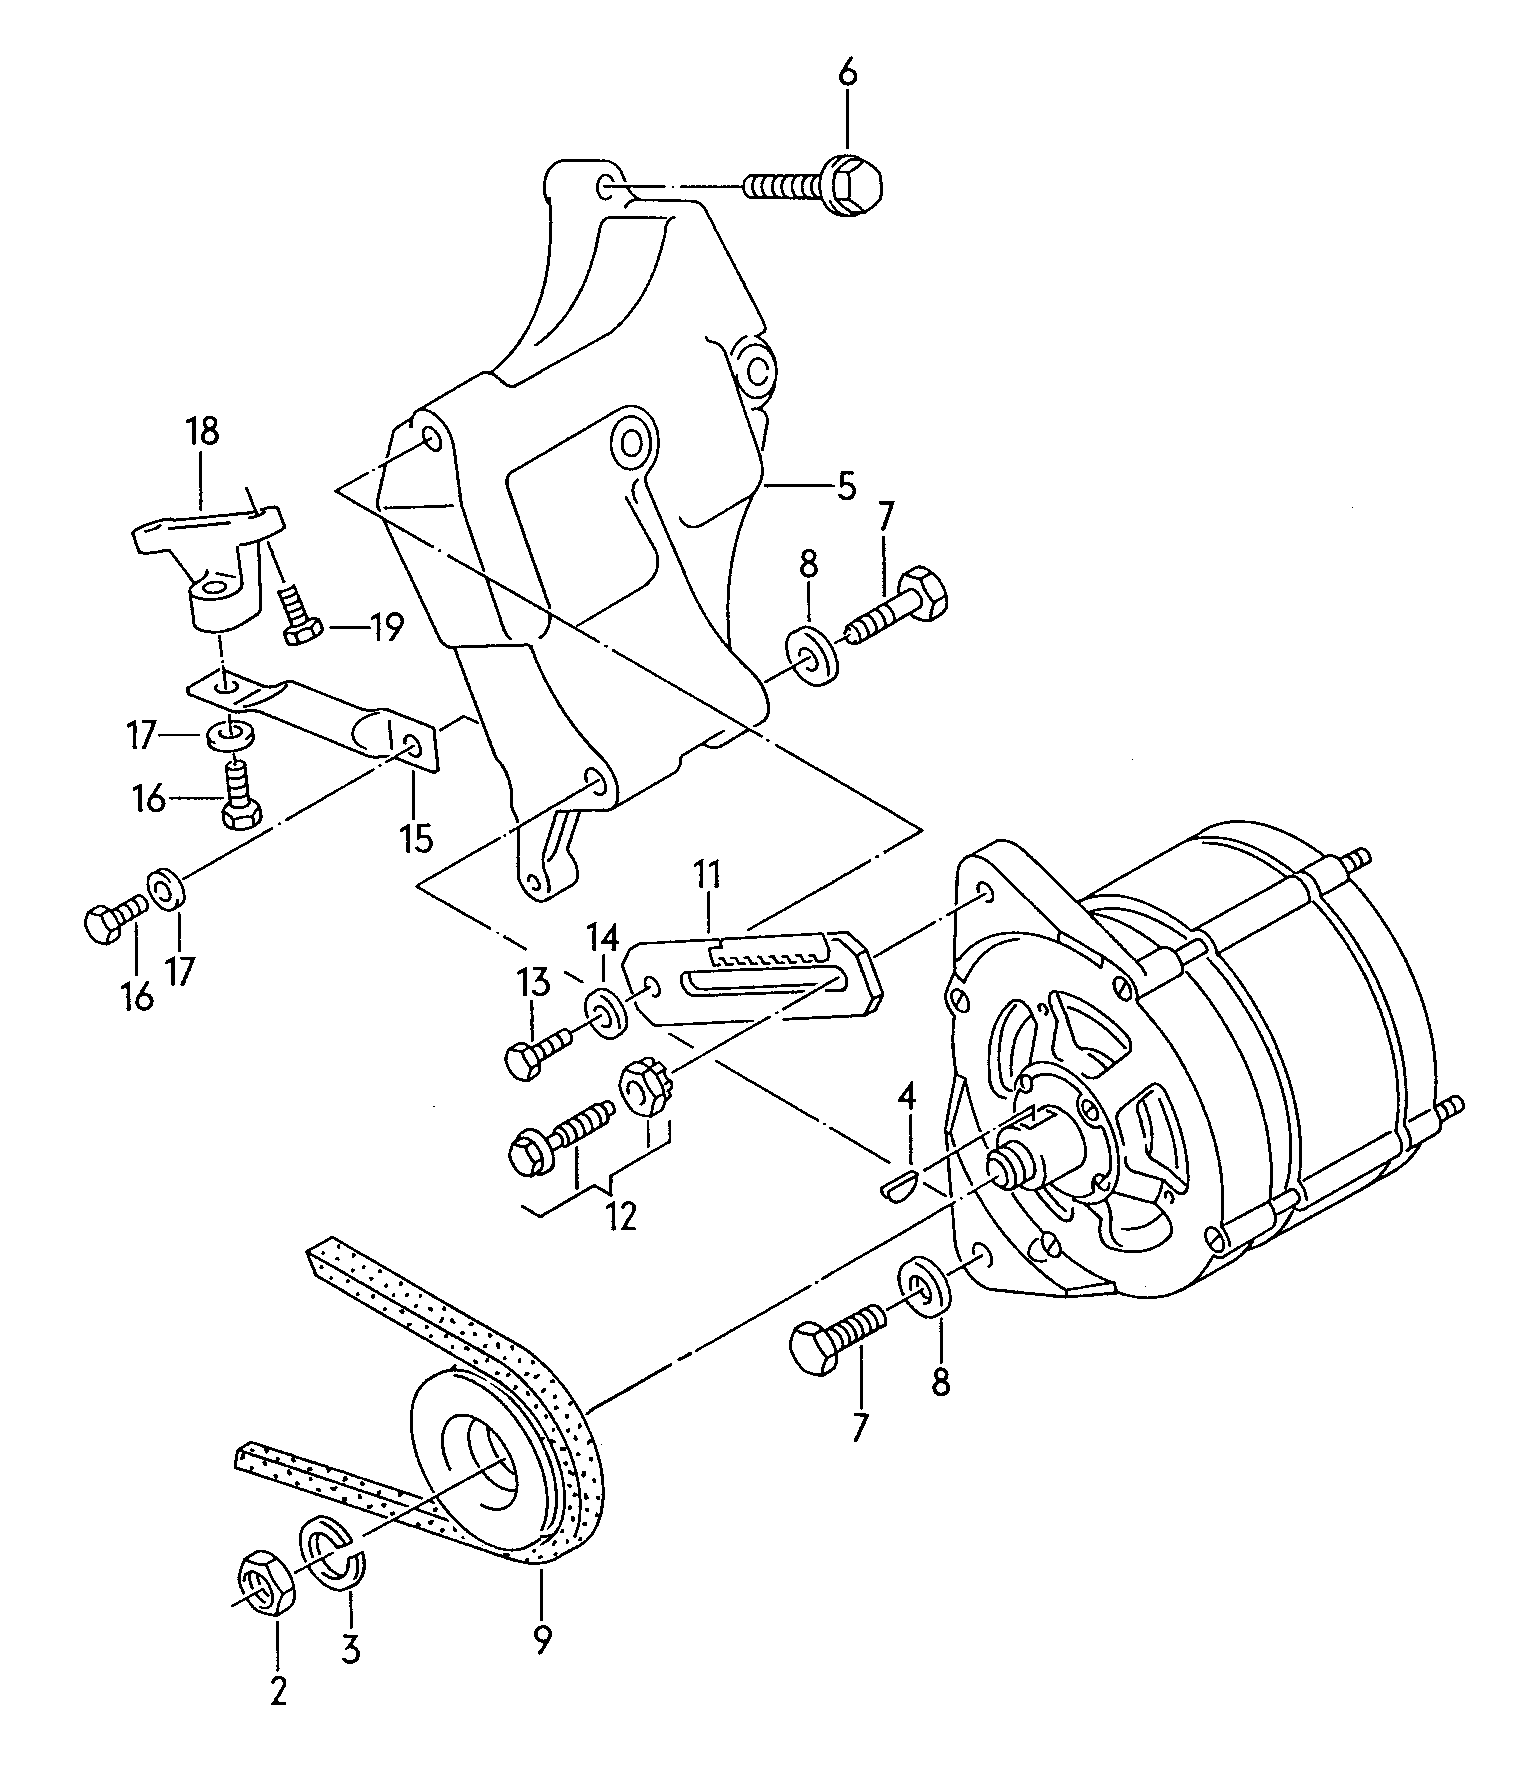 piezas conexion y
fijacion p. alternador - Audi Coupe quattro(ACOQ)  